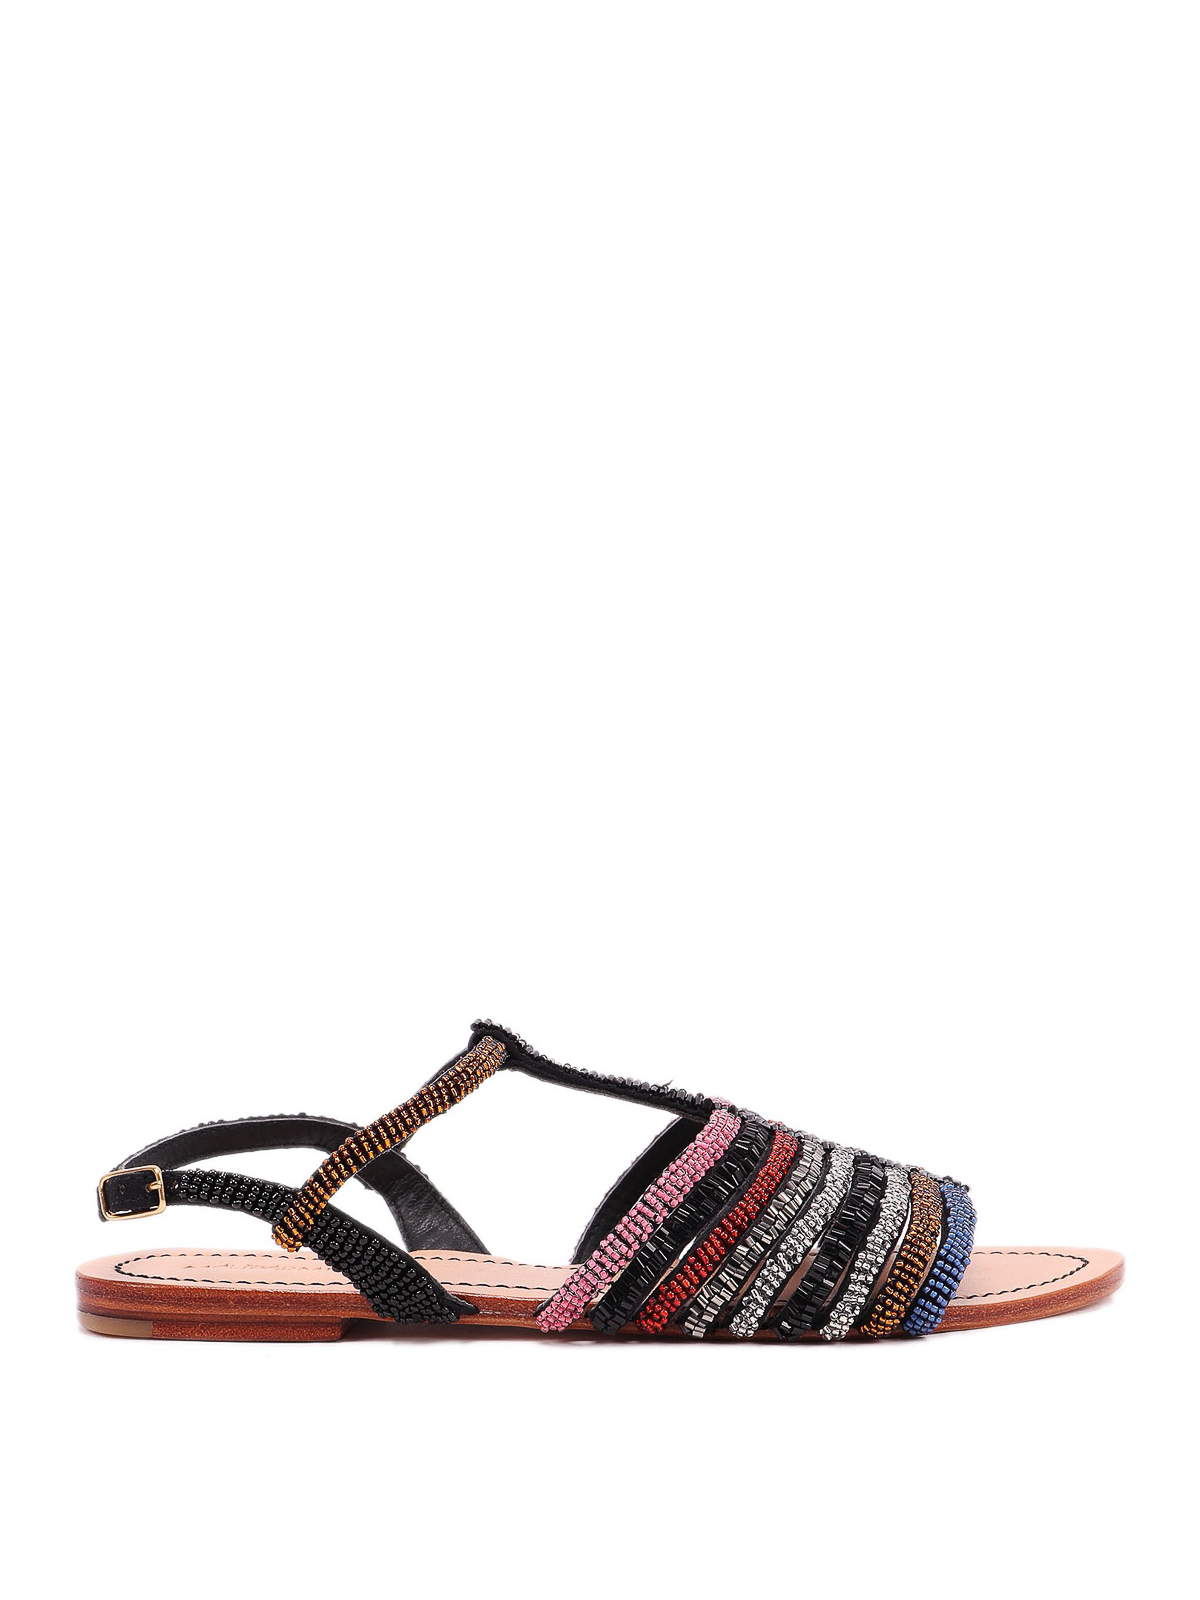 Sandals Maliparmi - Beaded flat sandals - SX09179076620B99